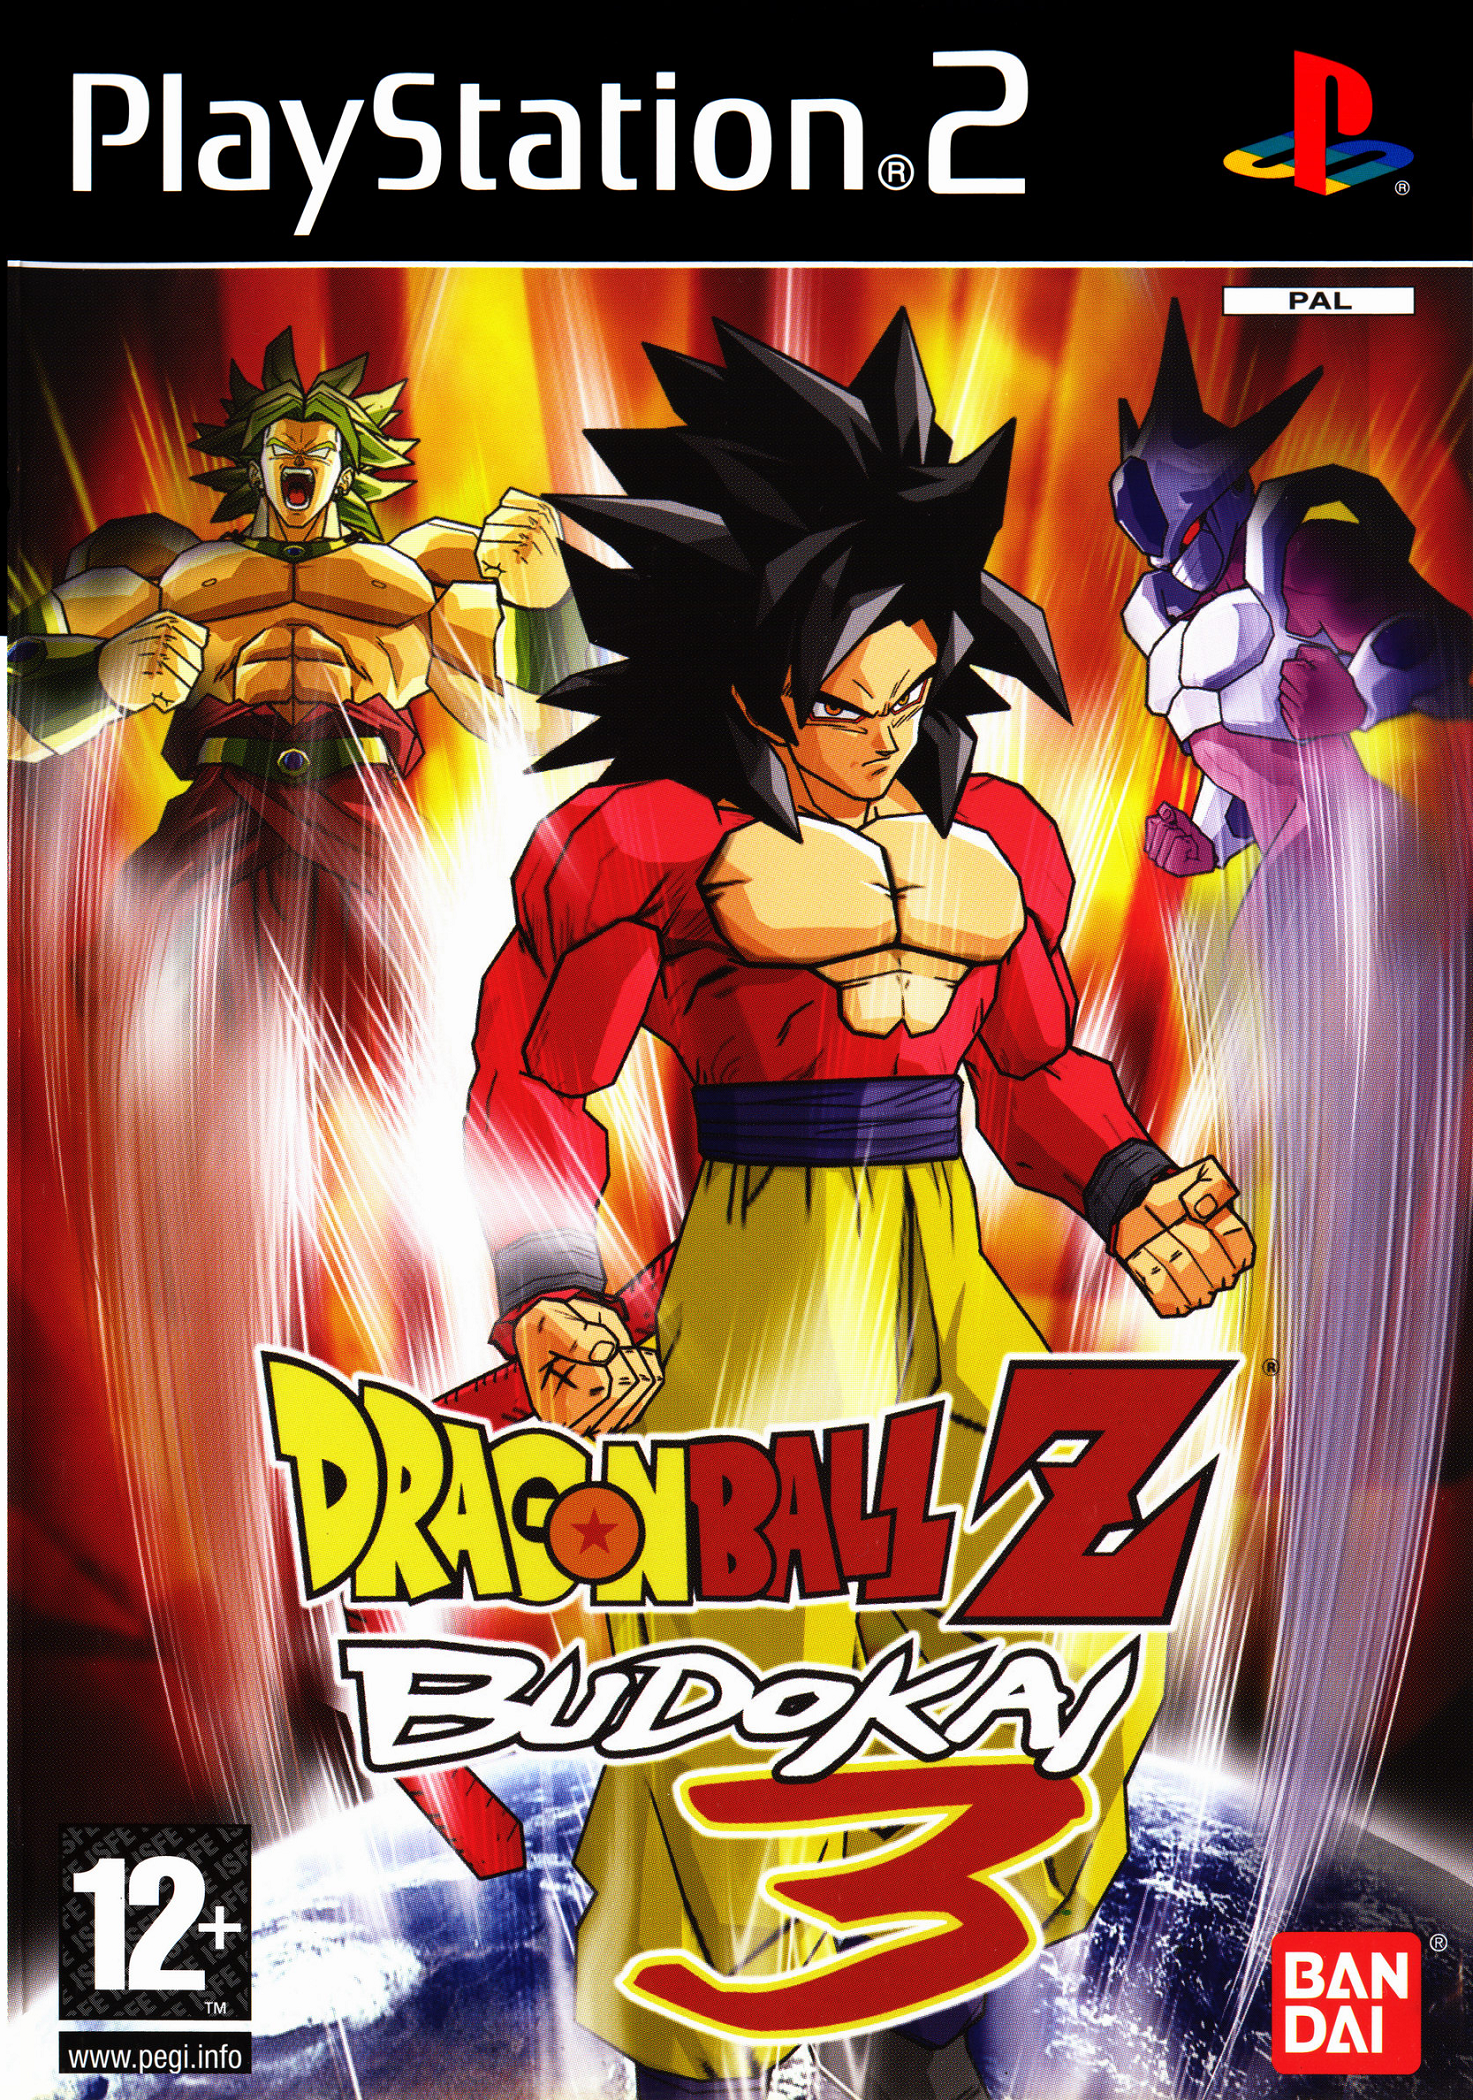 Dragon Ball Z: Budokai 3 | Videospiele Wiki | FANDOM powered by Wikia